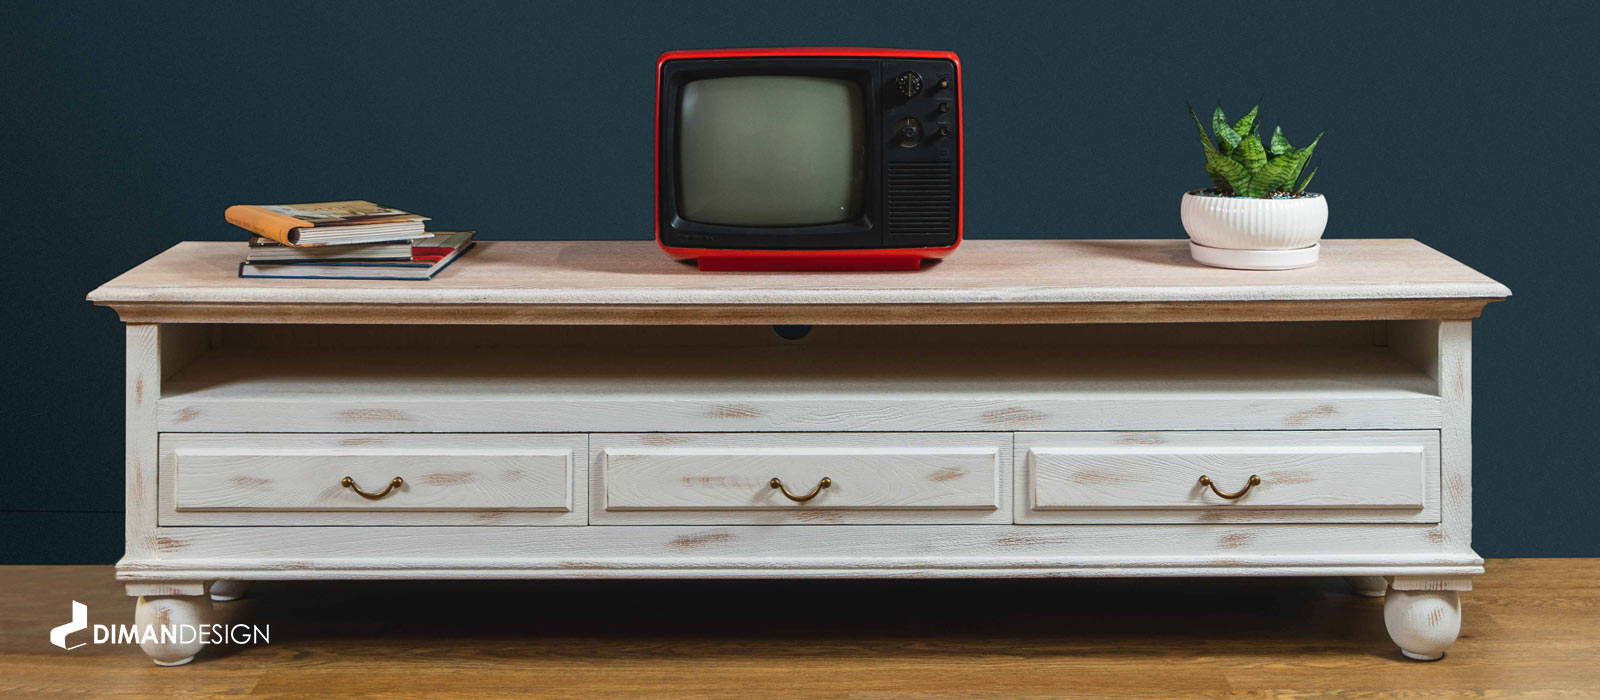 Diman Neoclassical Tv Table